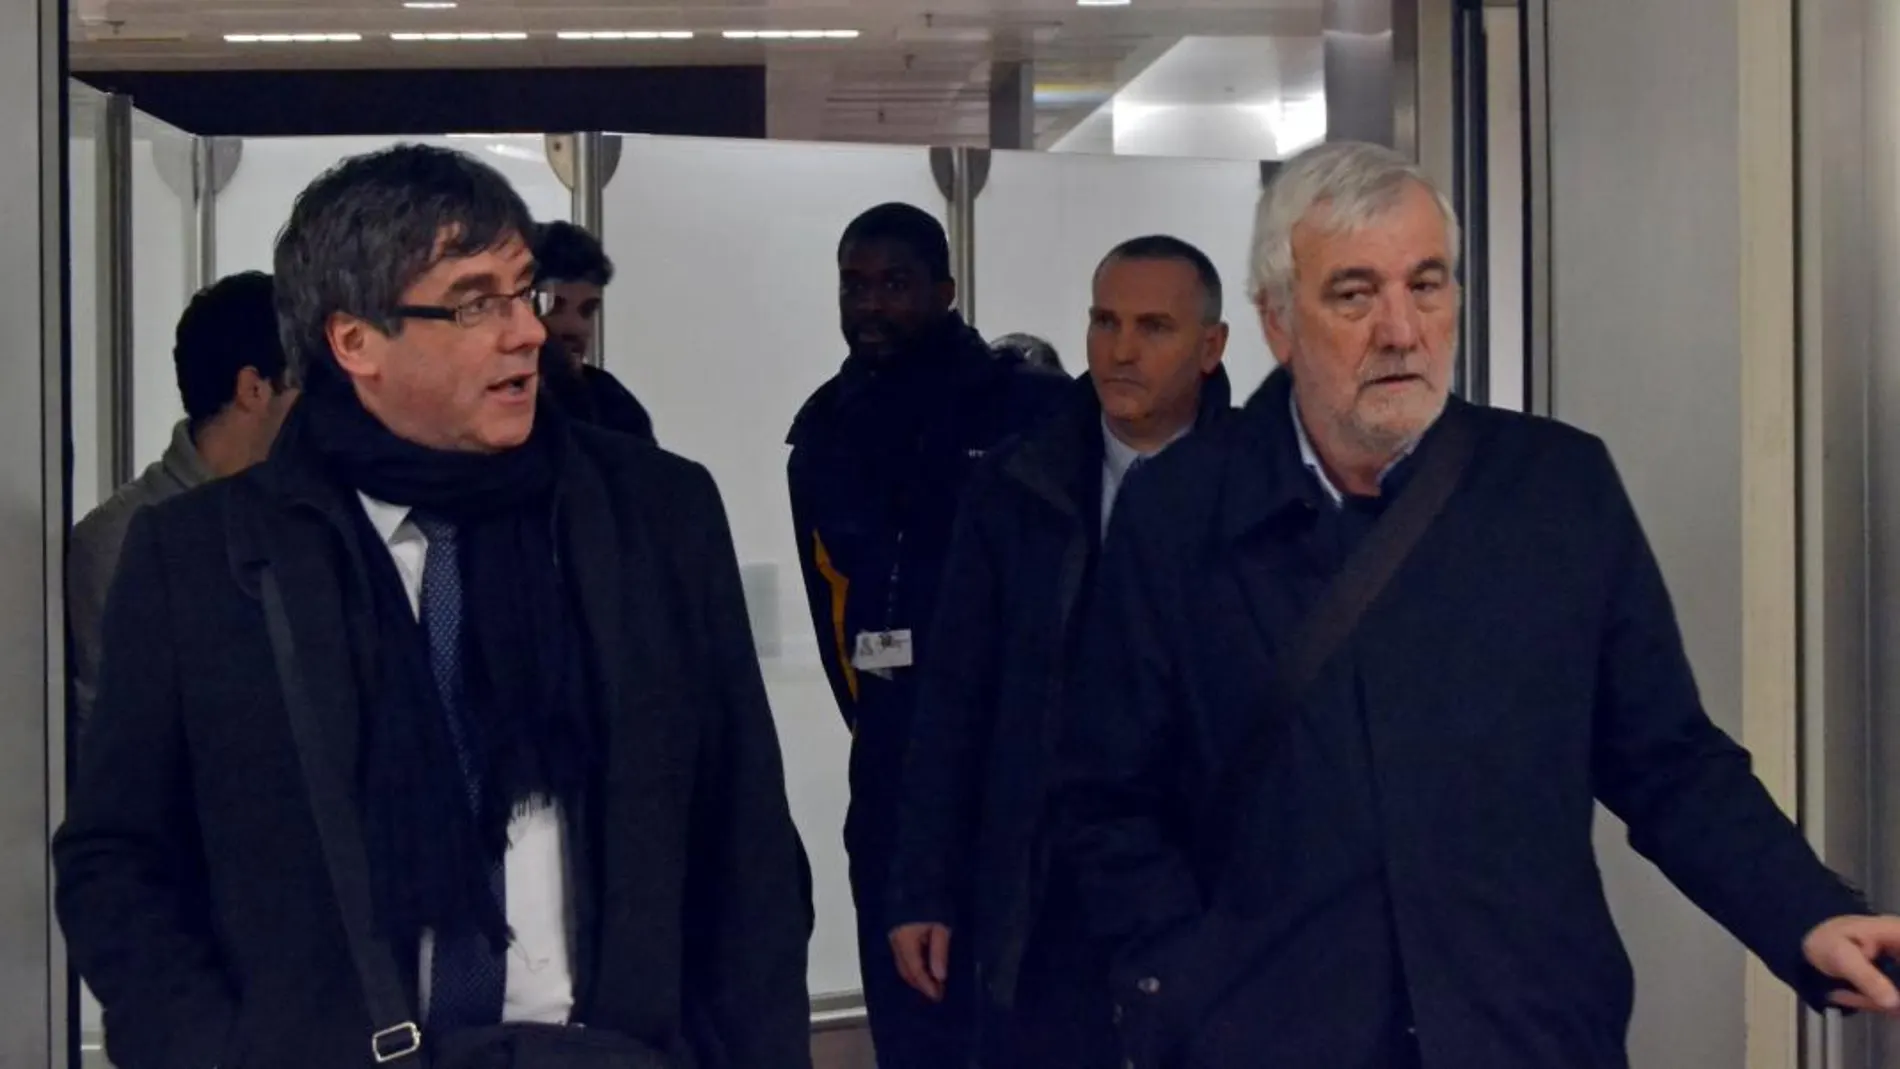 El juez no ve motivos para juzgar al empresario Josep Maria Matamala (dcha.), en la imagen con Puigdemont Bruselas el pasado enero